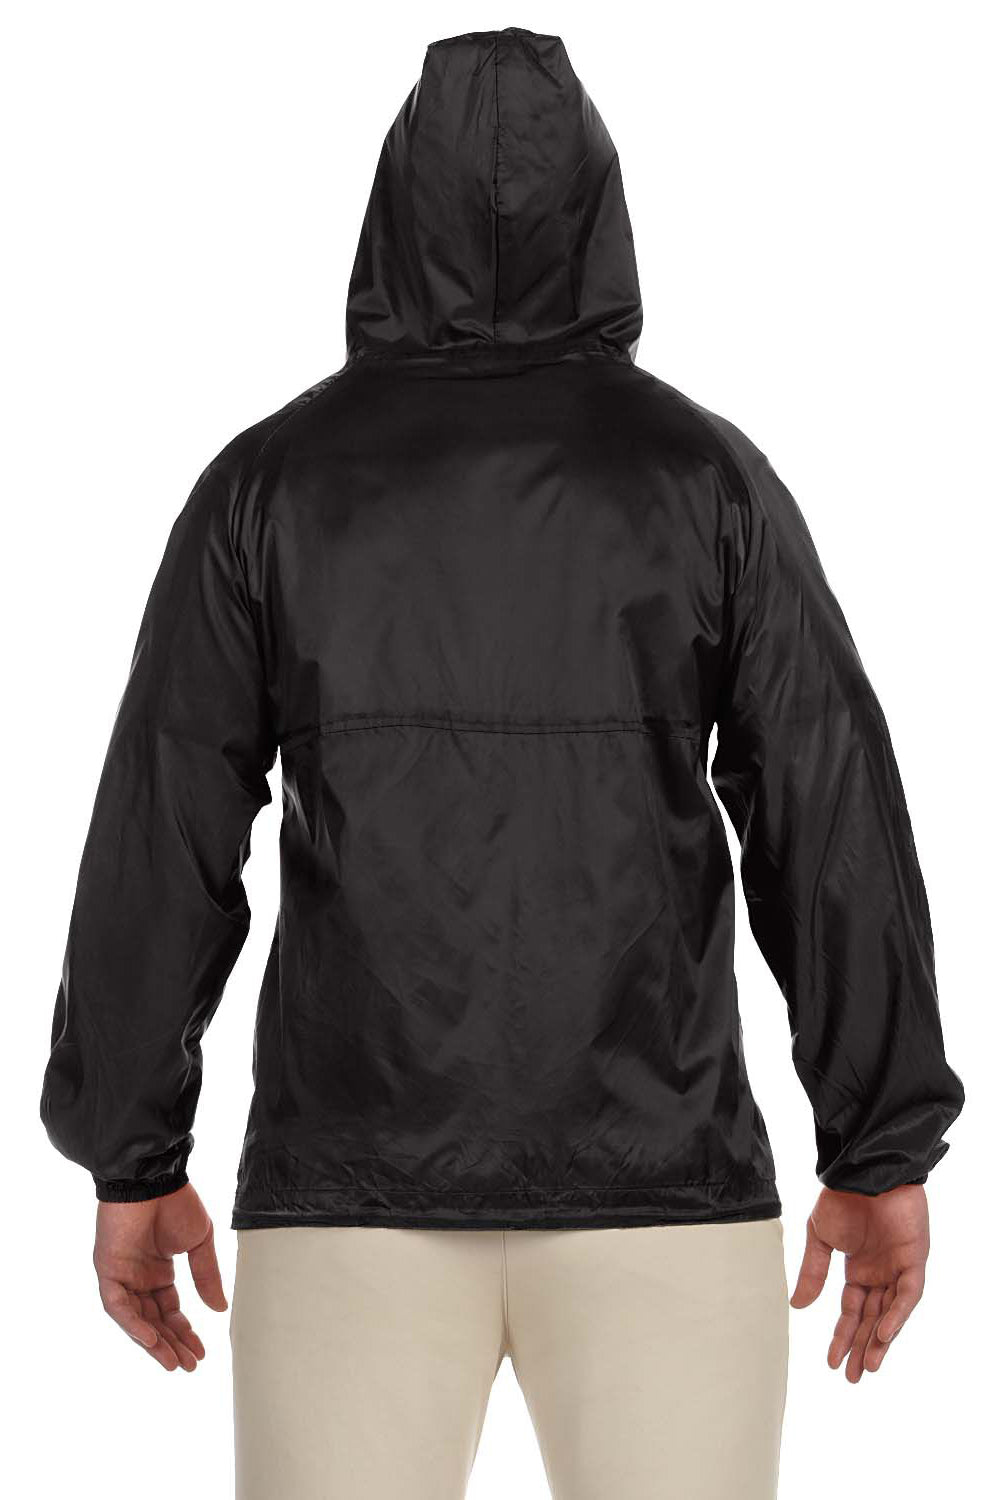 Harriton M750 Mens Packable Wind & Water Resistant 1/4 Zip Hooded Jacket Black Back